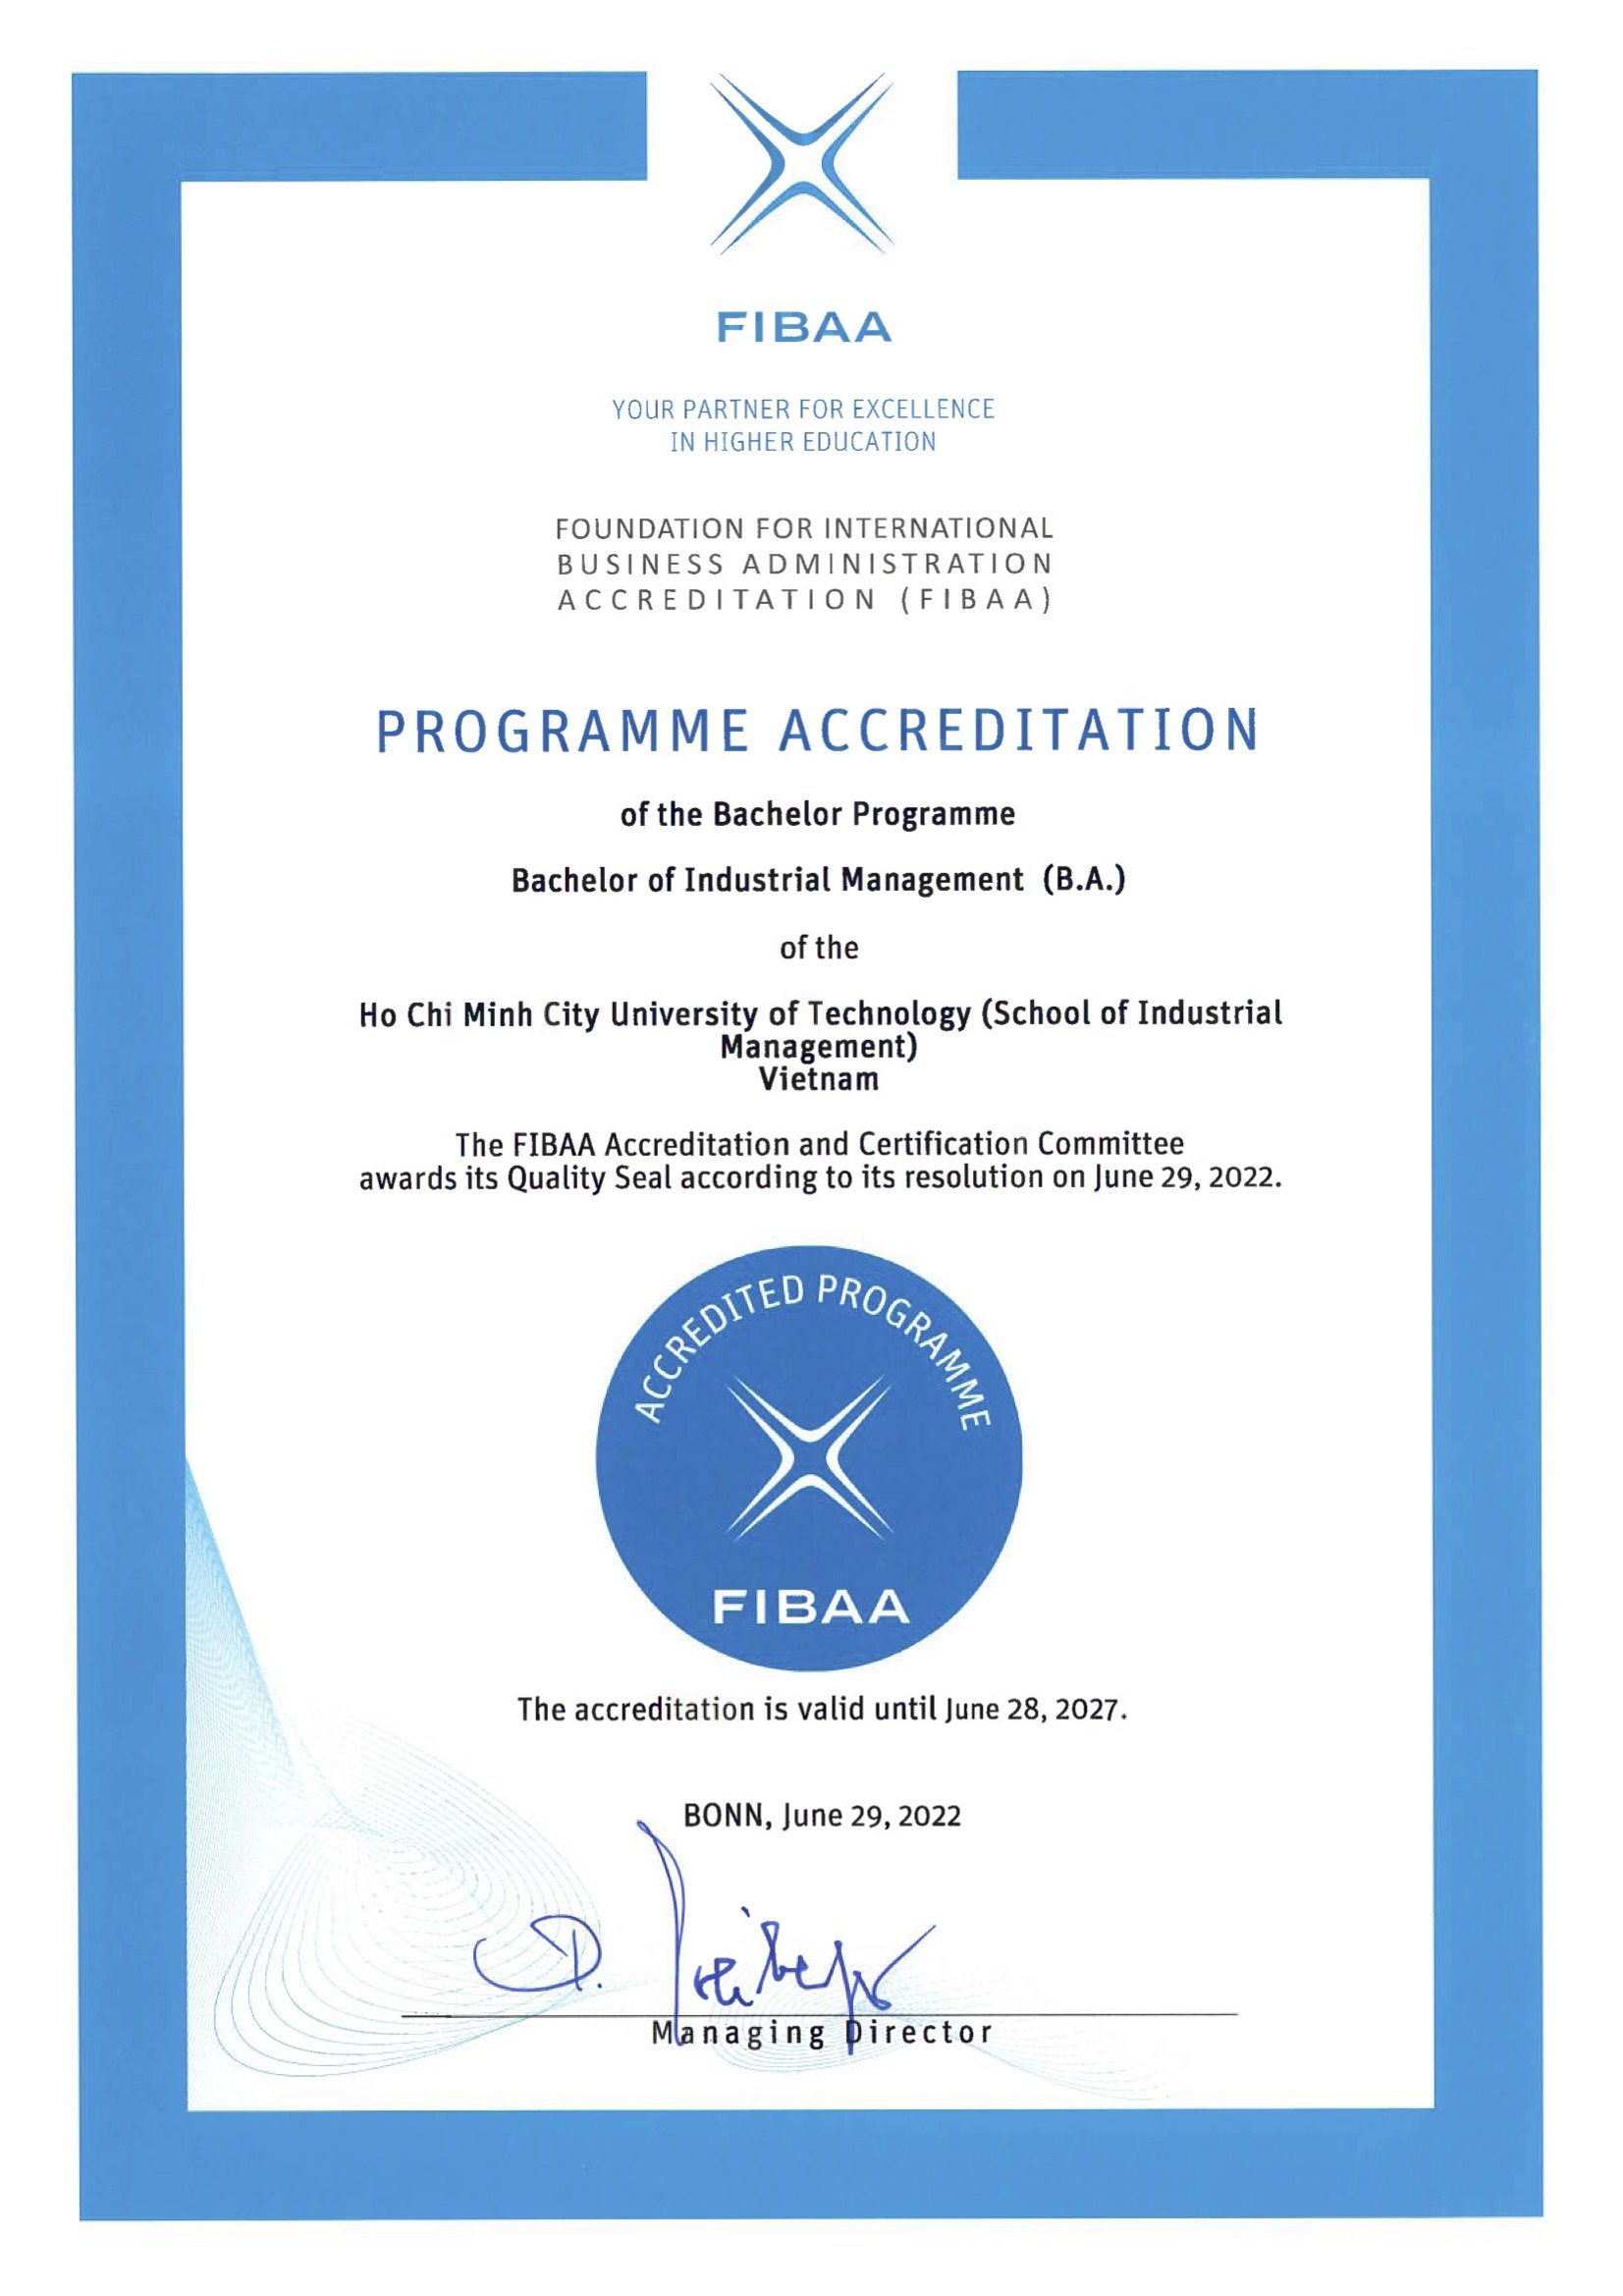 Quản lý Công nghiệp đạt kiểm định FIBAA